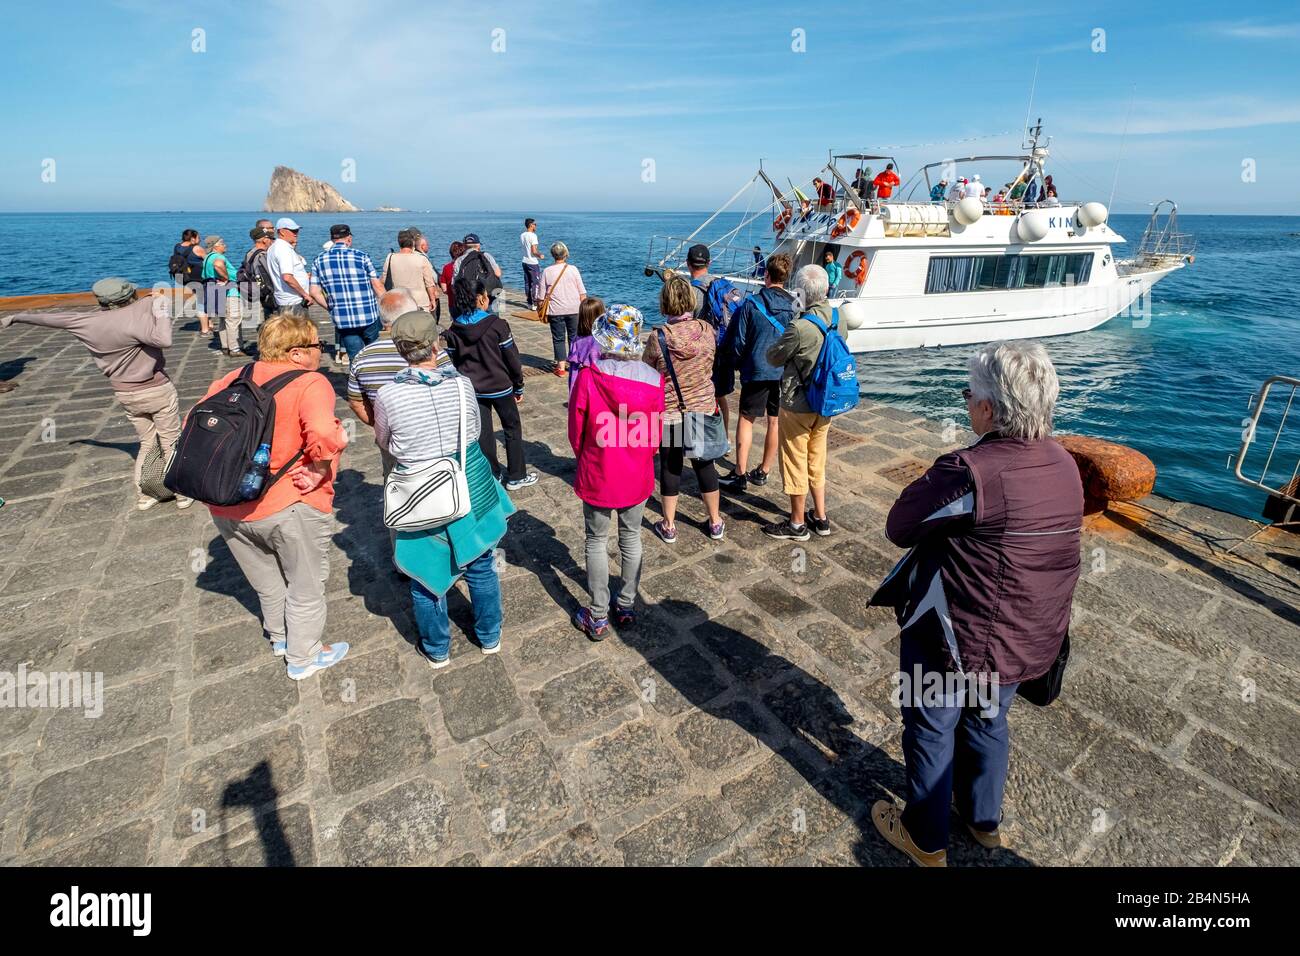 Escursione in barca con persone in attesa, Isole Eolie, Isole Eolie, Mar Tirreno, Italia Meridionale, Europa, Italia Foto Stock